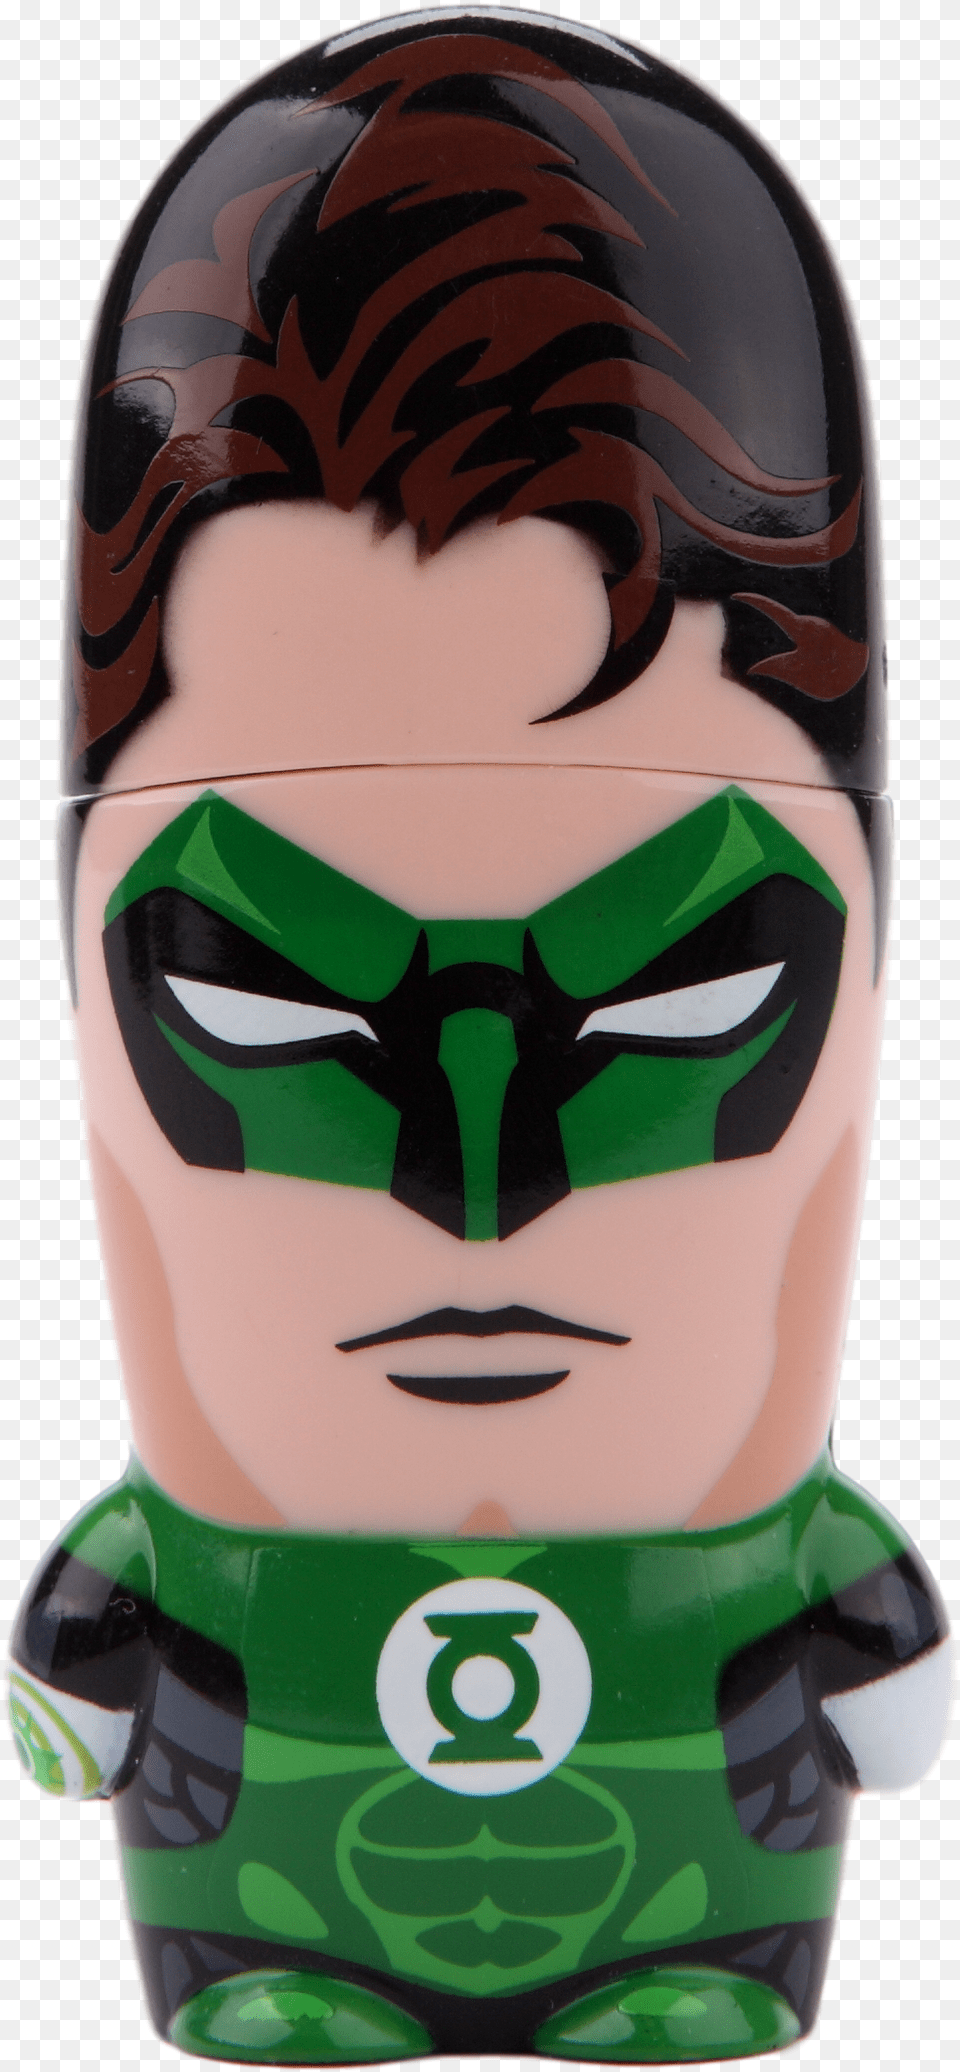 Download Hal Jordan Green Lantern Green Lantern, Person, Cosmetics Free Transparent Png